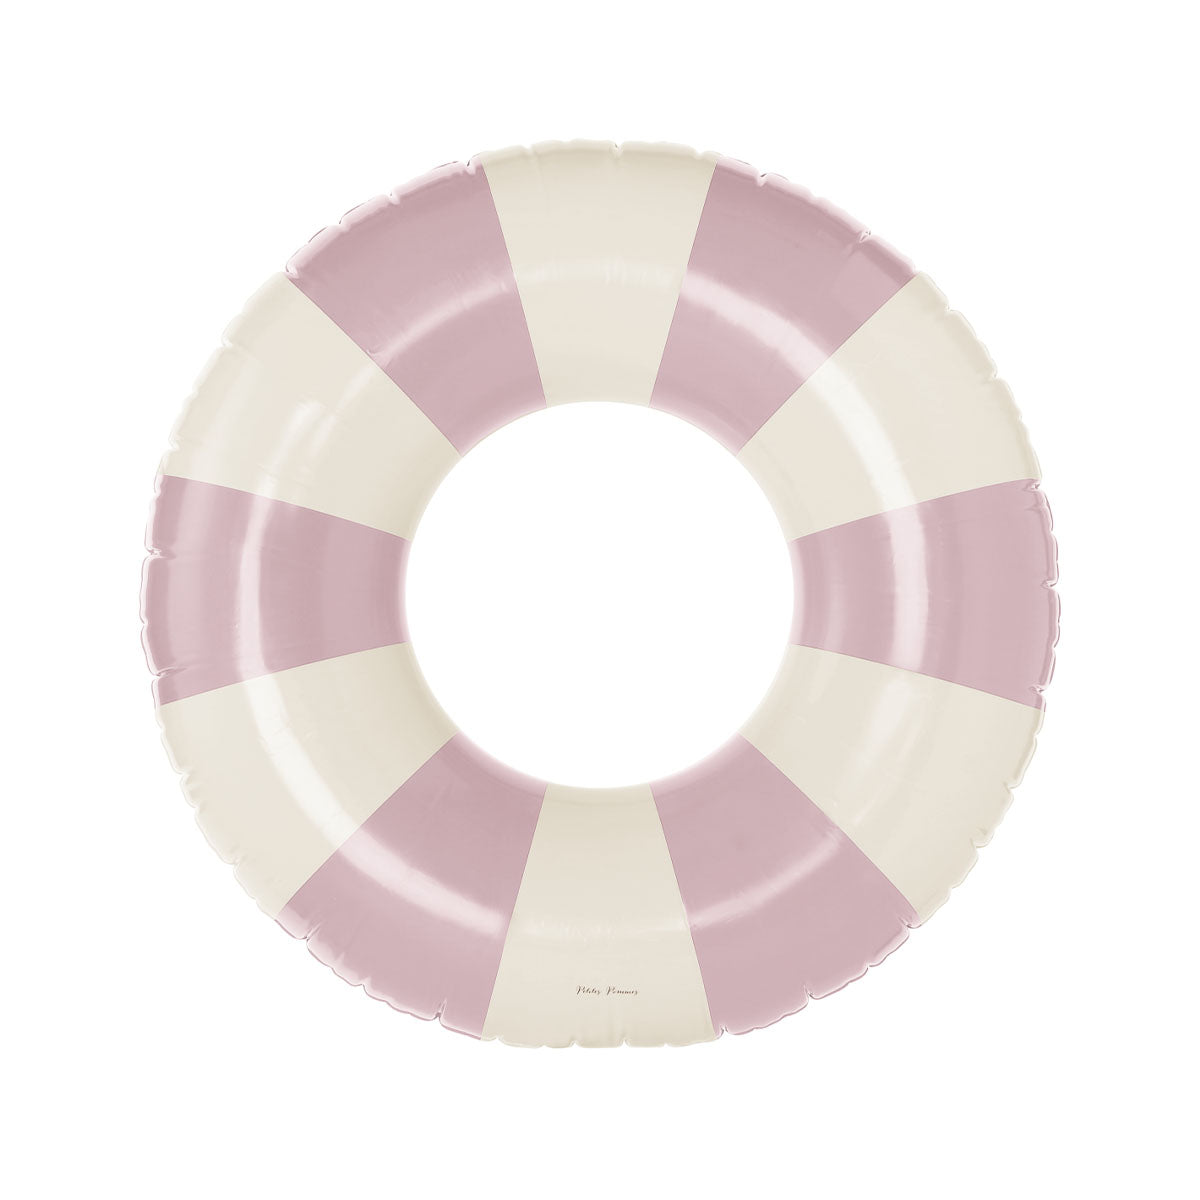 De Petites Pommes Sally zwemband in de kleur french rose is een opblaasbare zwemband met een diameter van 90cm. Met deze zwemring kan jouw kindje heerlijk relaxen en zwemmen in het zwembad of de zee. VanZus.